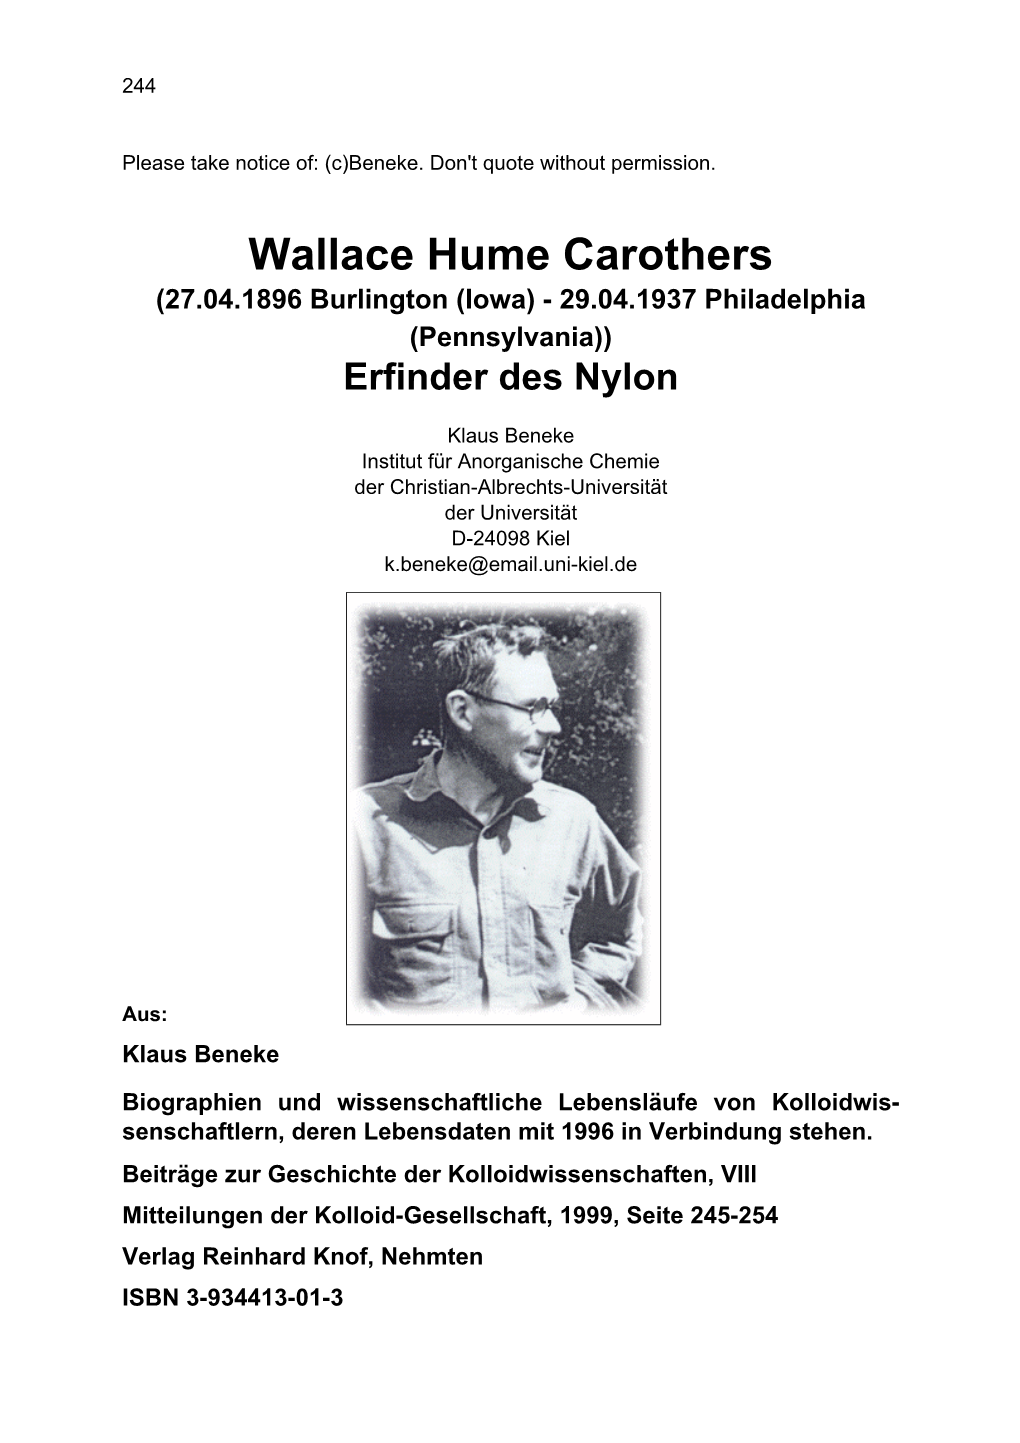 Wallace Hume Carothers (27.04.1896 Burlington (Iowa) - 29.04.1937 Philadelphia (Pennsylvania)) Erfinder Des Nylon